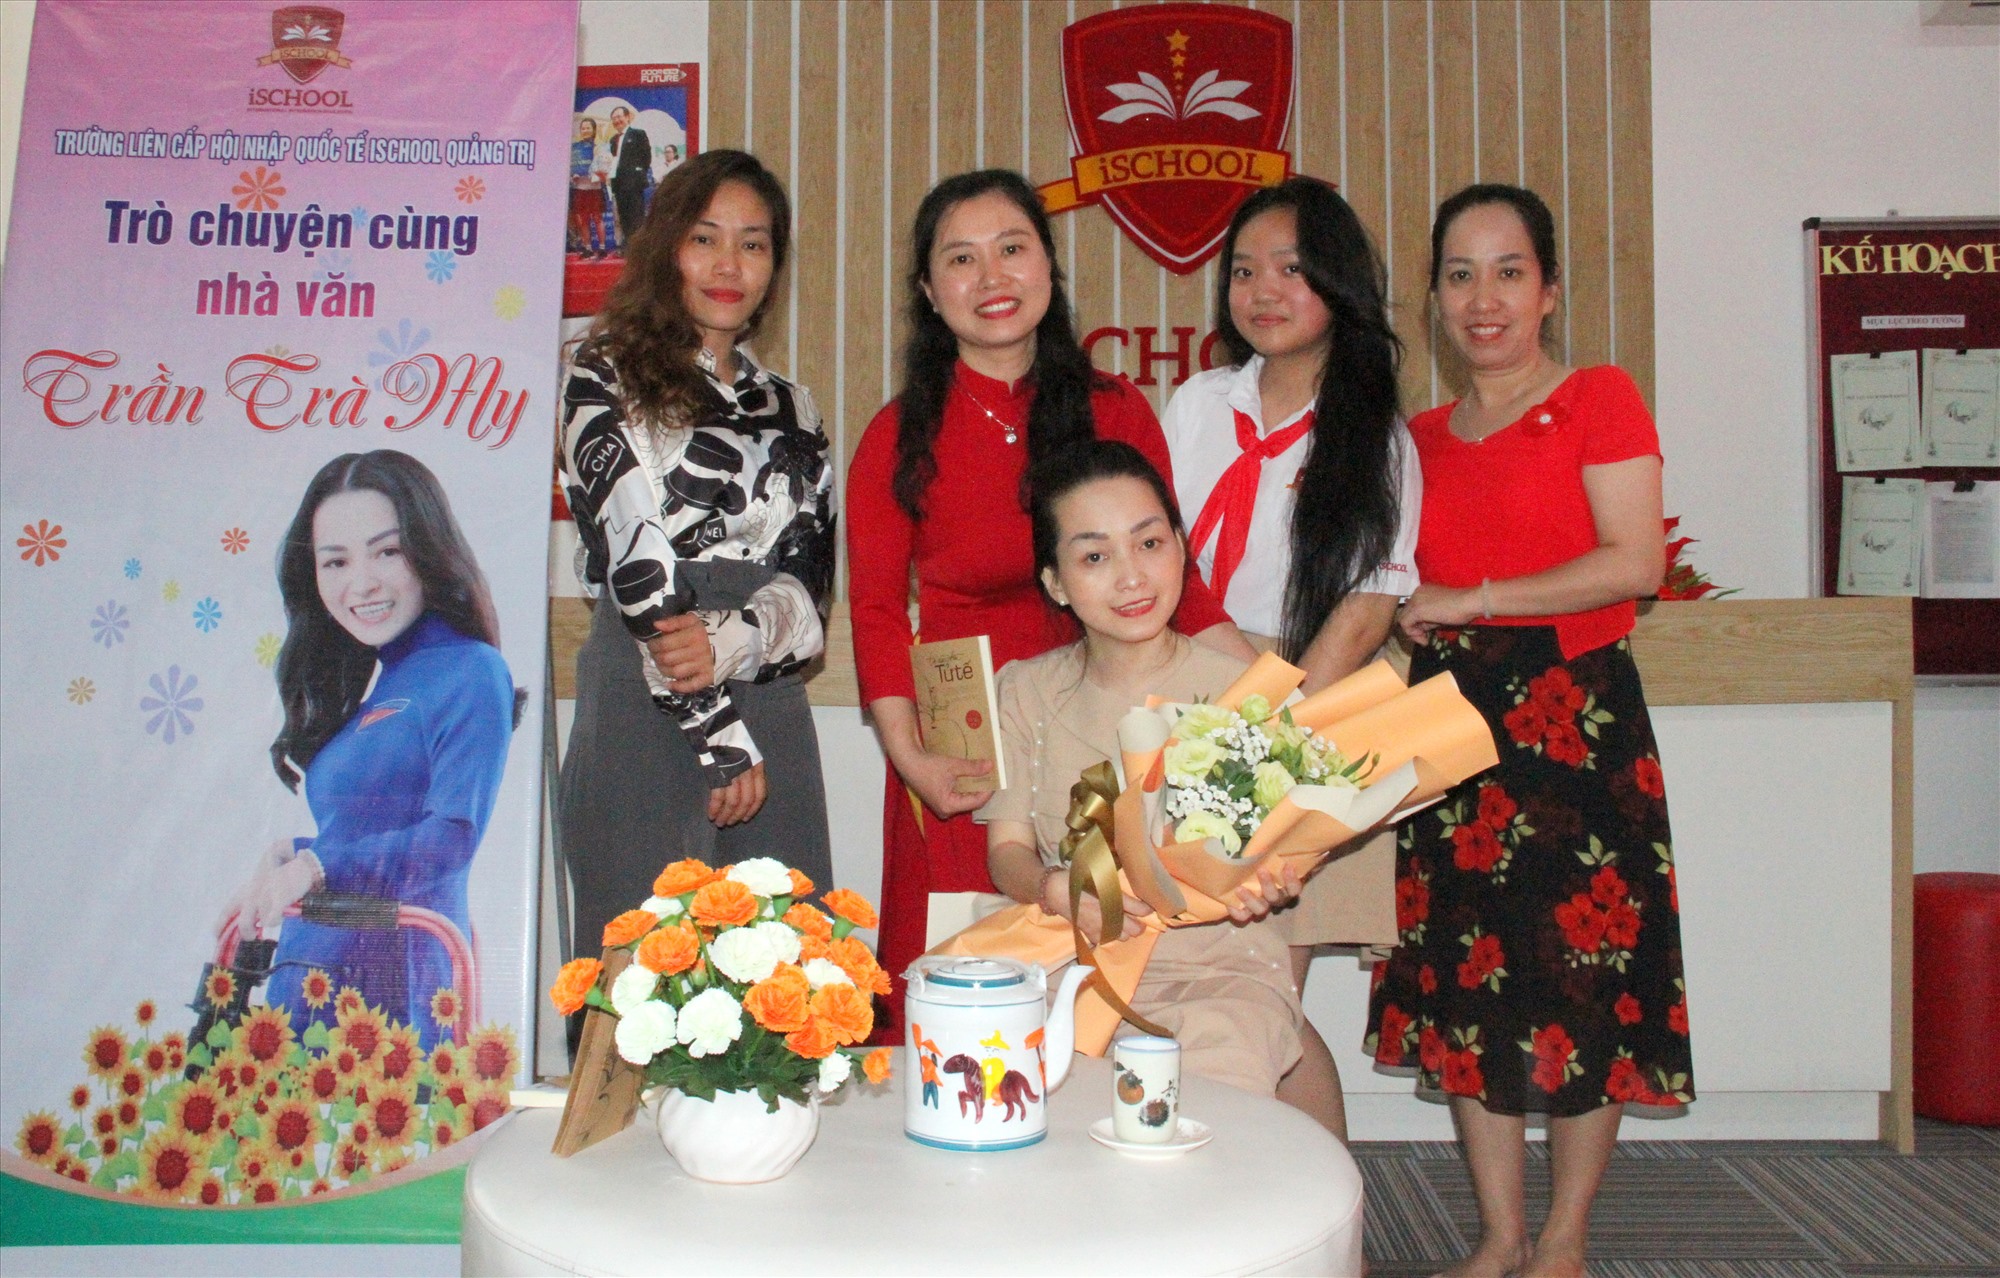 Nhà văn Trần Trà My (ngồi giữa) tại Trường Liên cấp hội nhập quốc iSchool Quảng Trị - Ảnh: MĐ